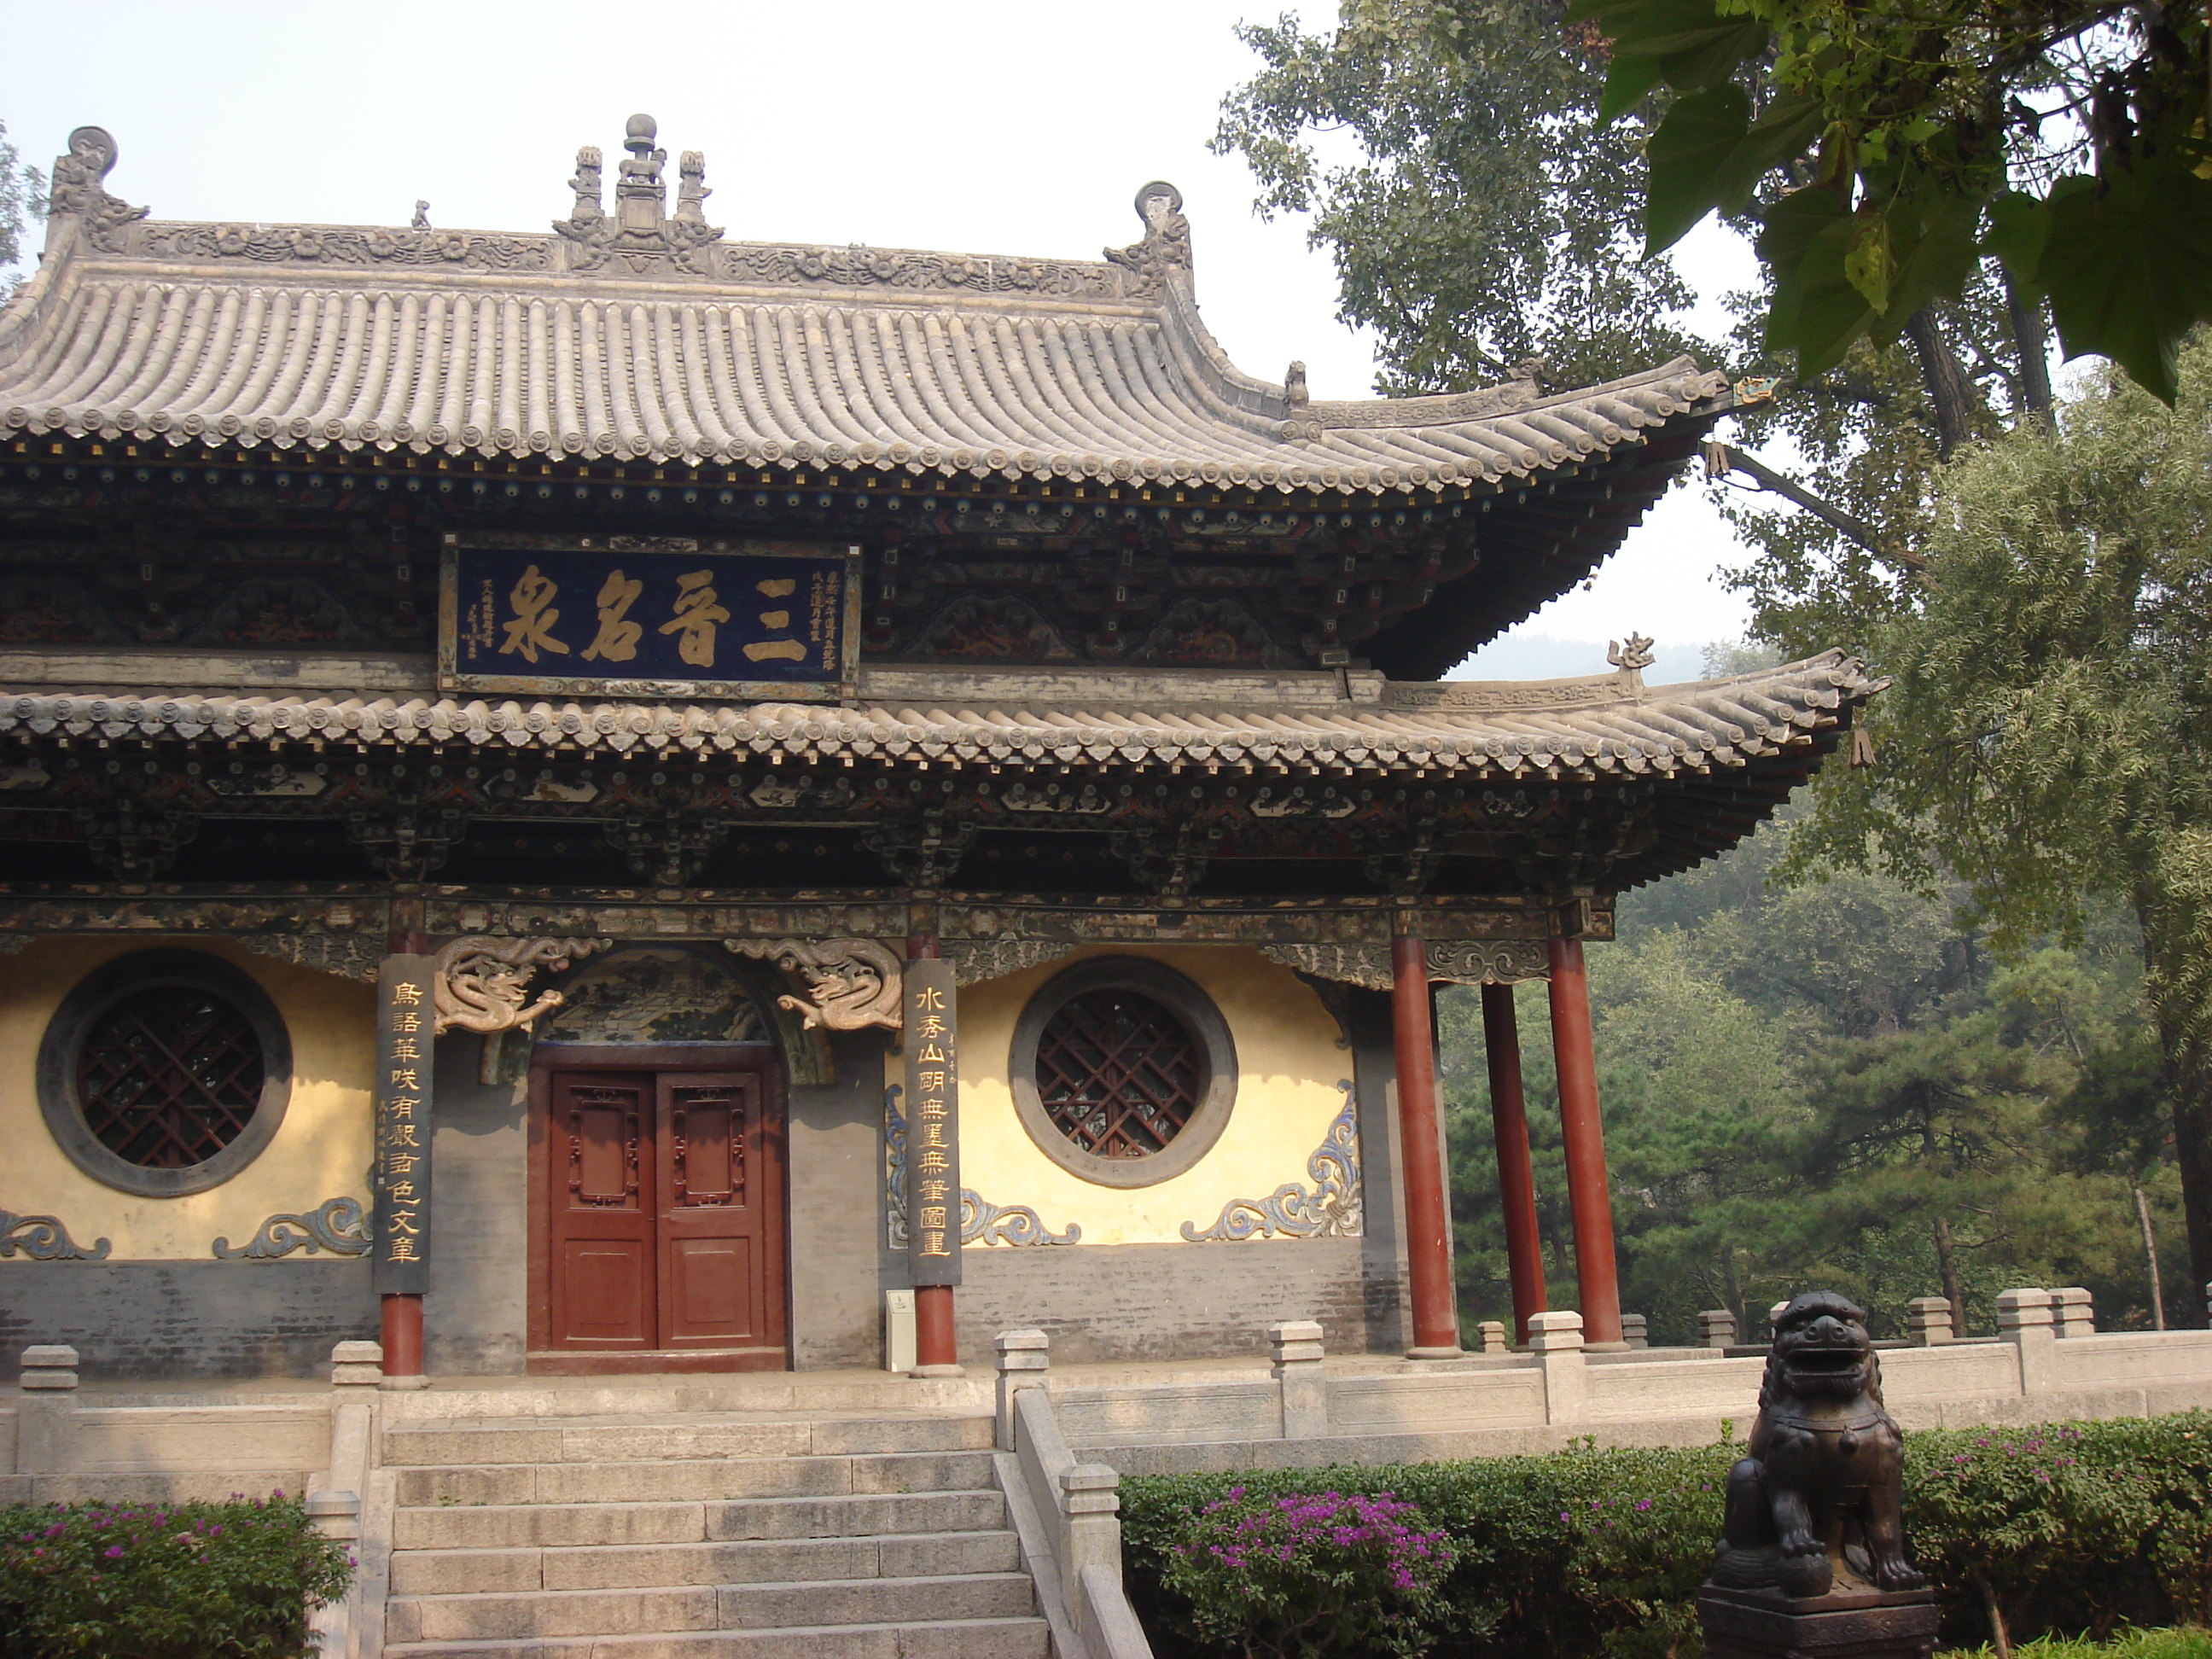 【携程攻略】太原晋祠博物馆景点,晋祠是山西省为数不多的知名寺庙